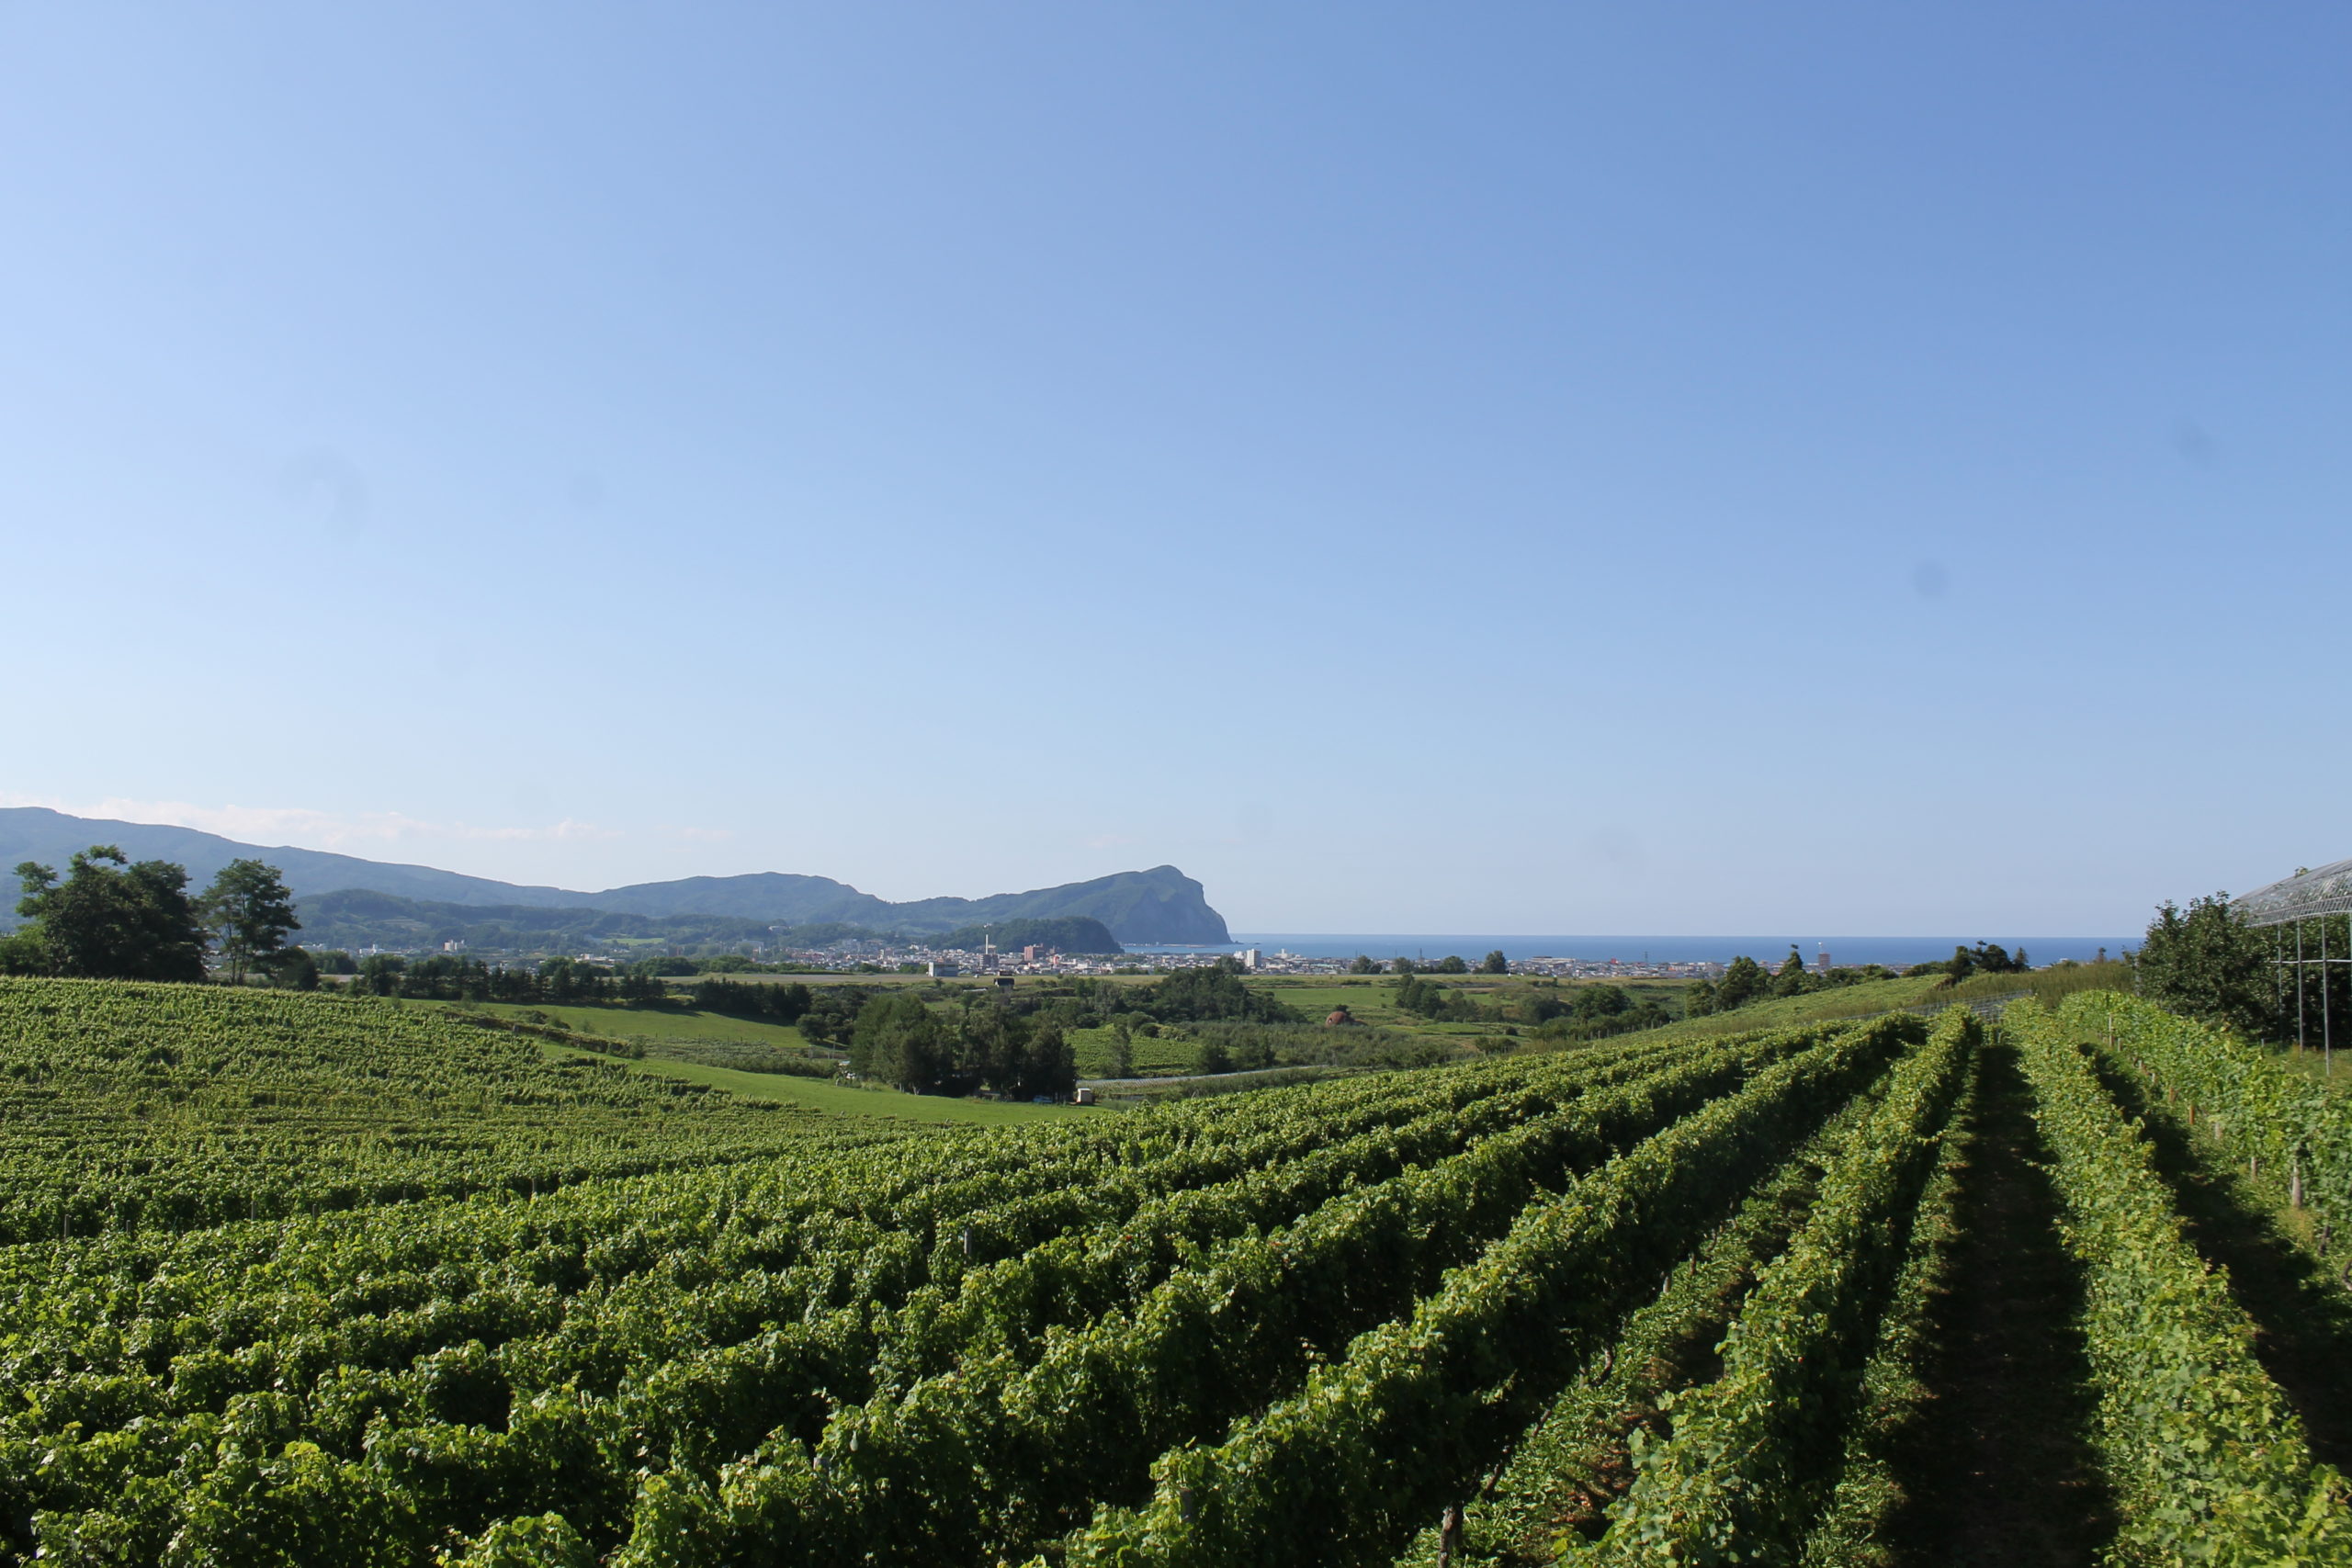 青空の下に広がる緑のワインぶどう畑。遠くにシリパ岬が見える写真